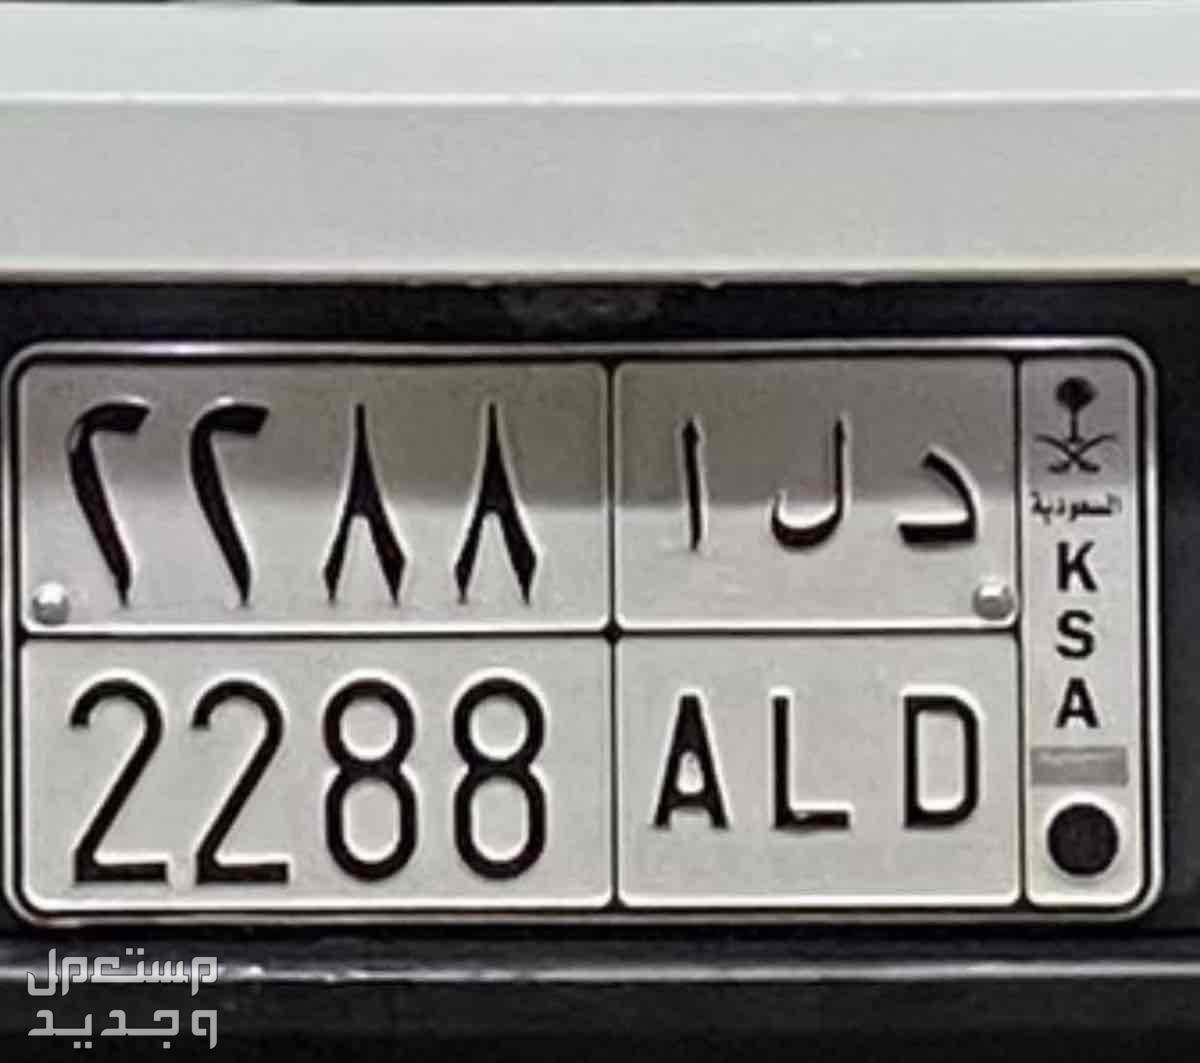 لوحة مميزة د ل ا - 2288 - خصوصي في جدة بسعر 5 آلاف ريال سعودي